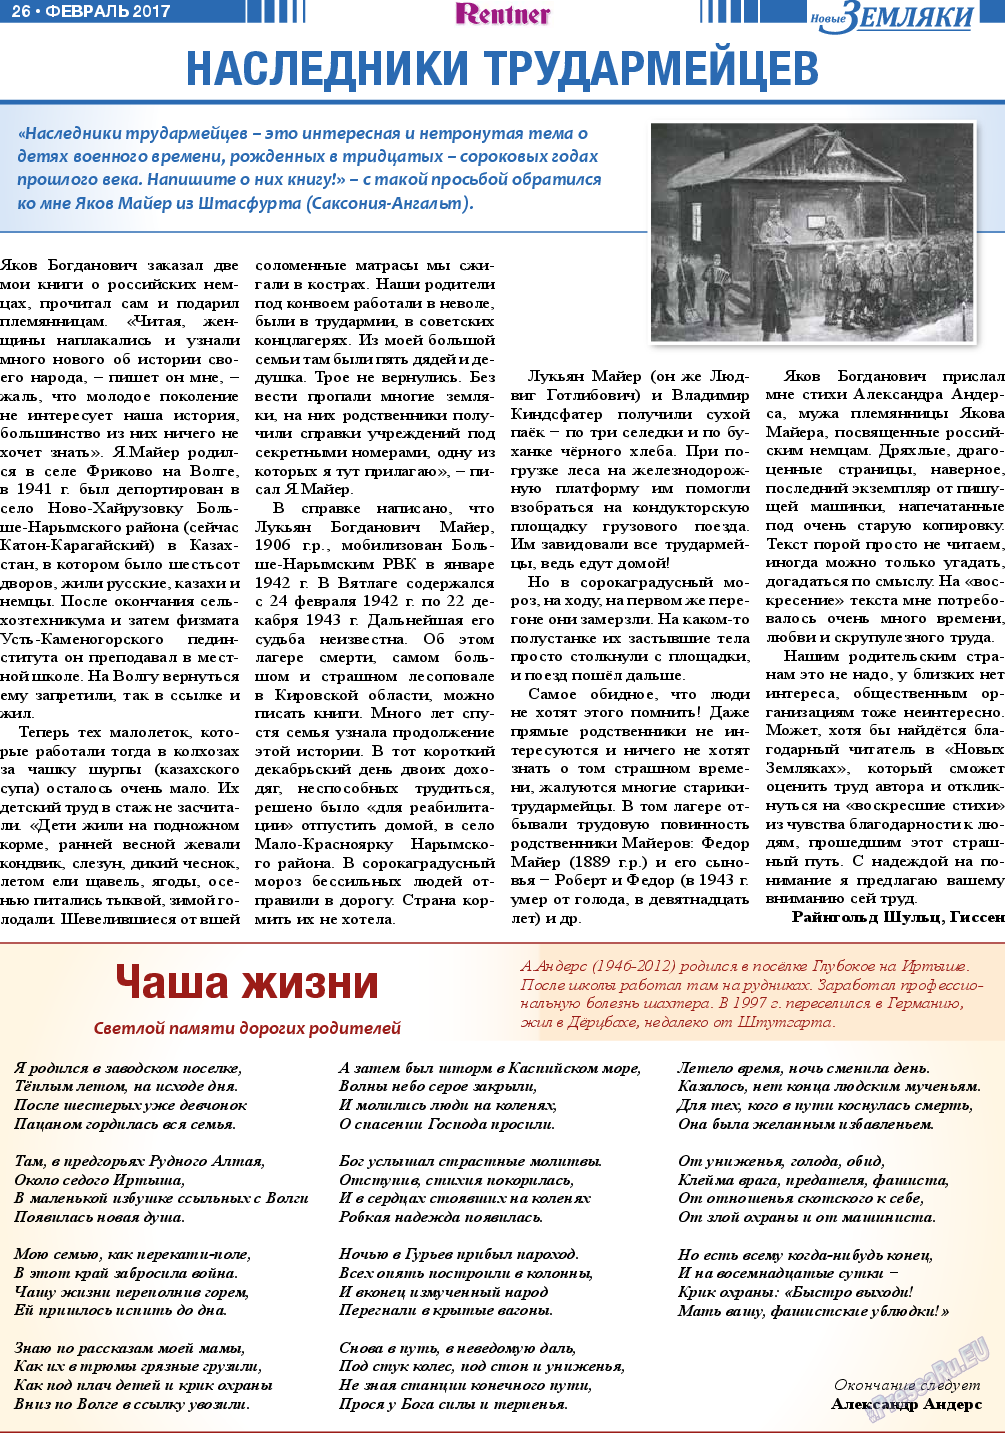 Новые Земляки, газета. 2017 №2 стр.26